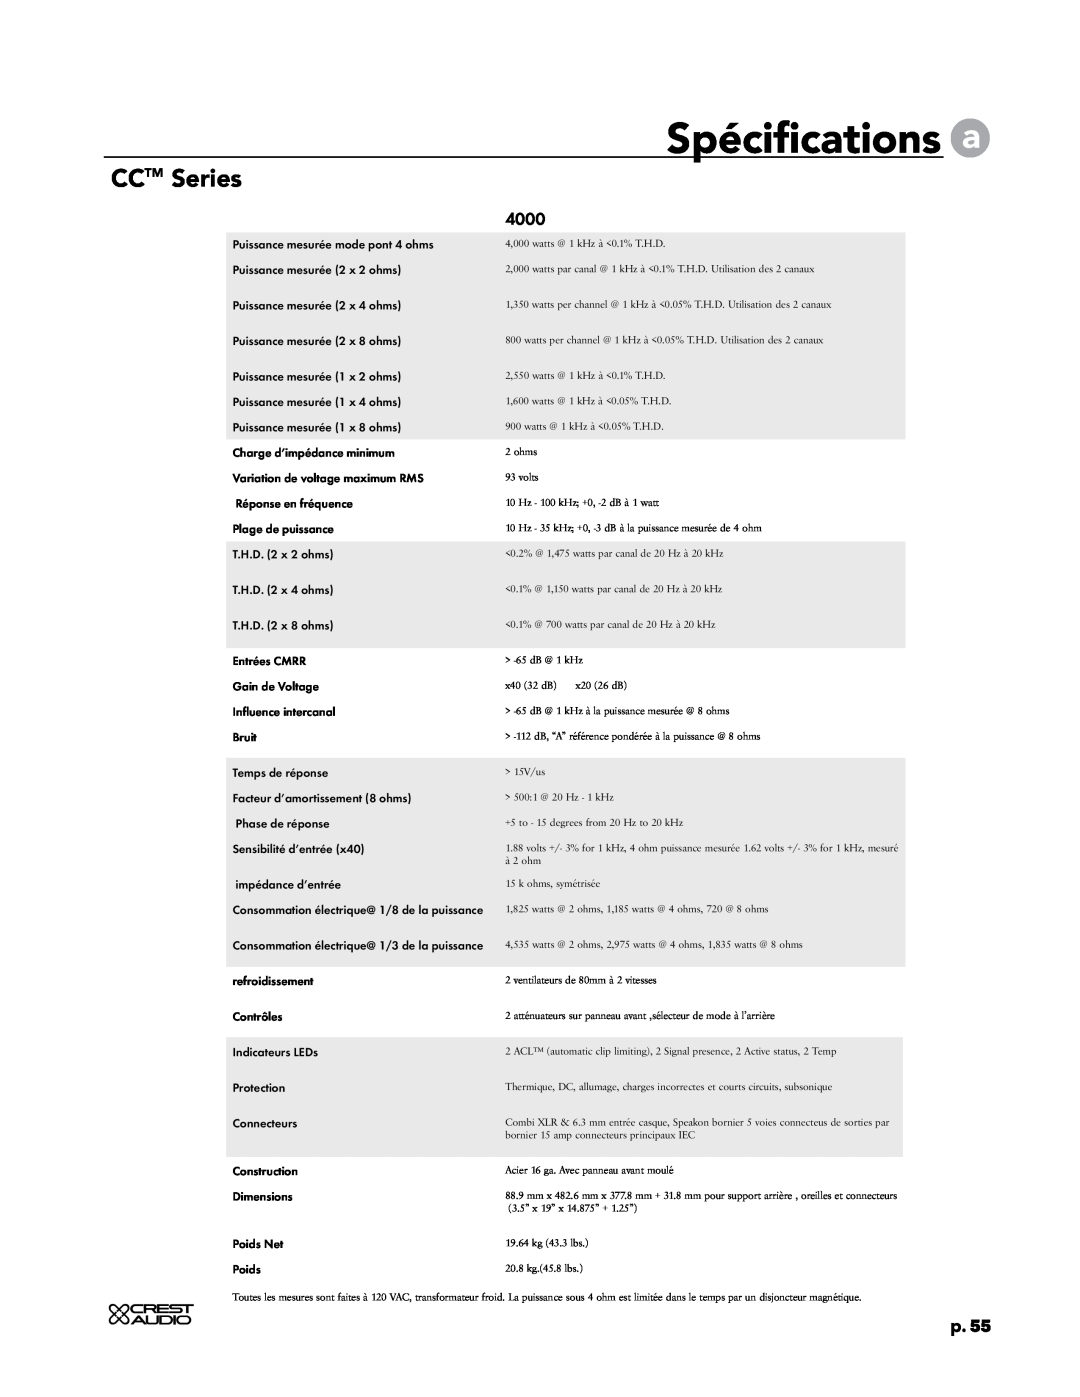 Crest Audio CC 1800, CC 5500, CC 2800, CC 4000 owner manual Spécifications a, CCTM Series, p.55 